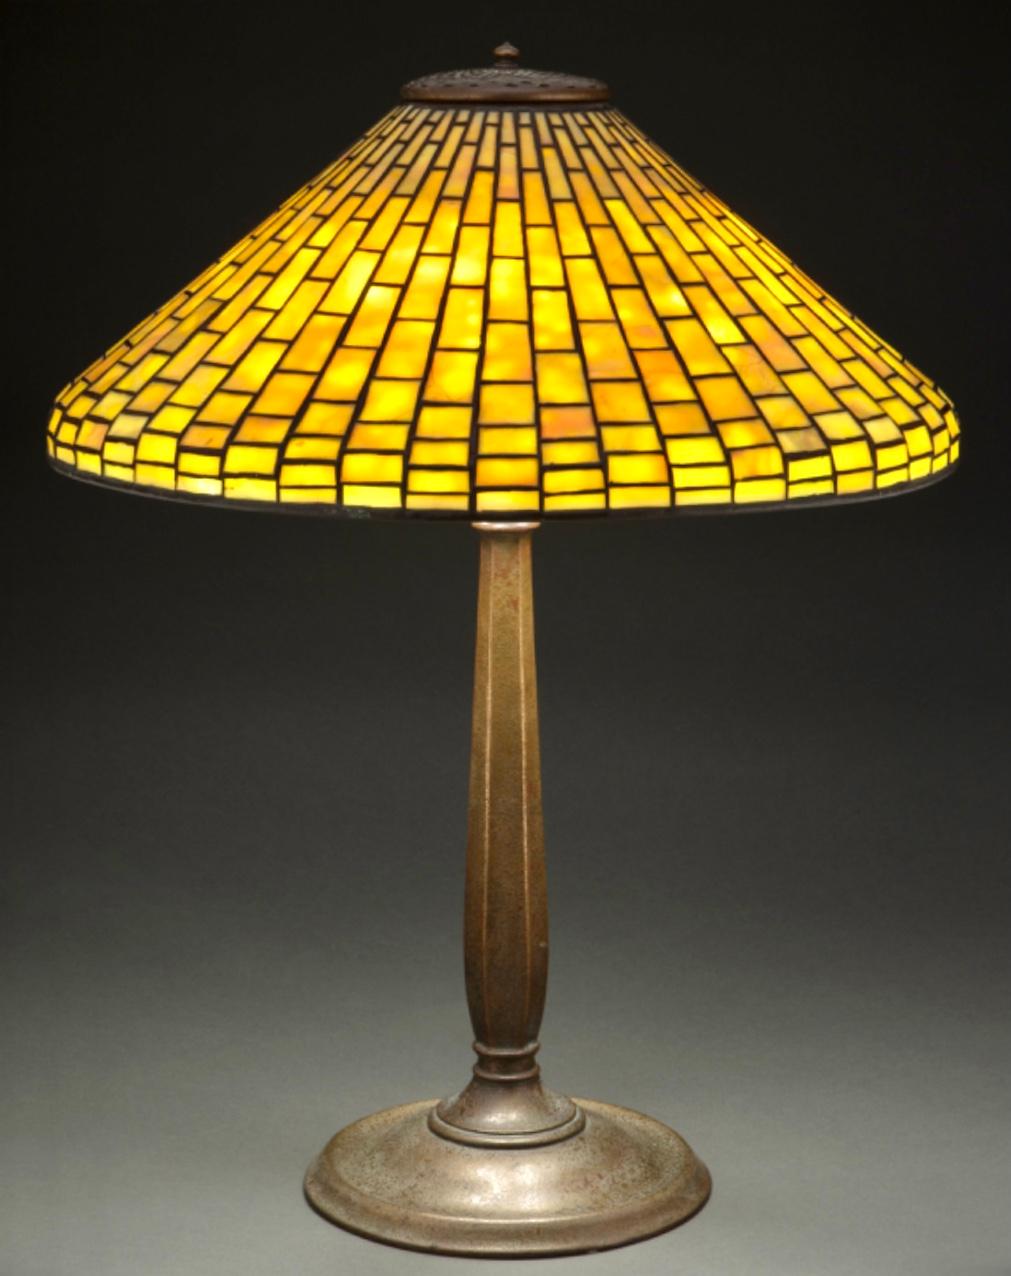 Lampe de table géométrique en verre au plomb et bronze patiné des studios Tiffany, vers 1910. Art nouveau classique avec design Art Deco. Attrayante texture de peau d'orange avec une légère dorure et une base en bronze de couleur rouge, couronnée